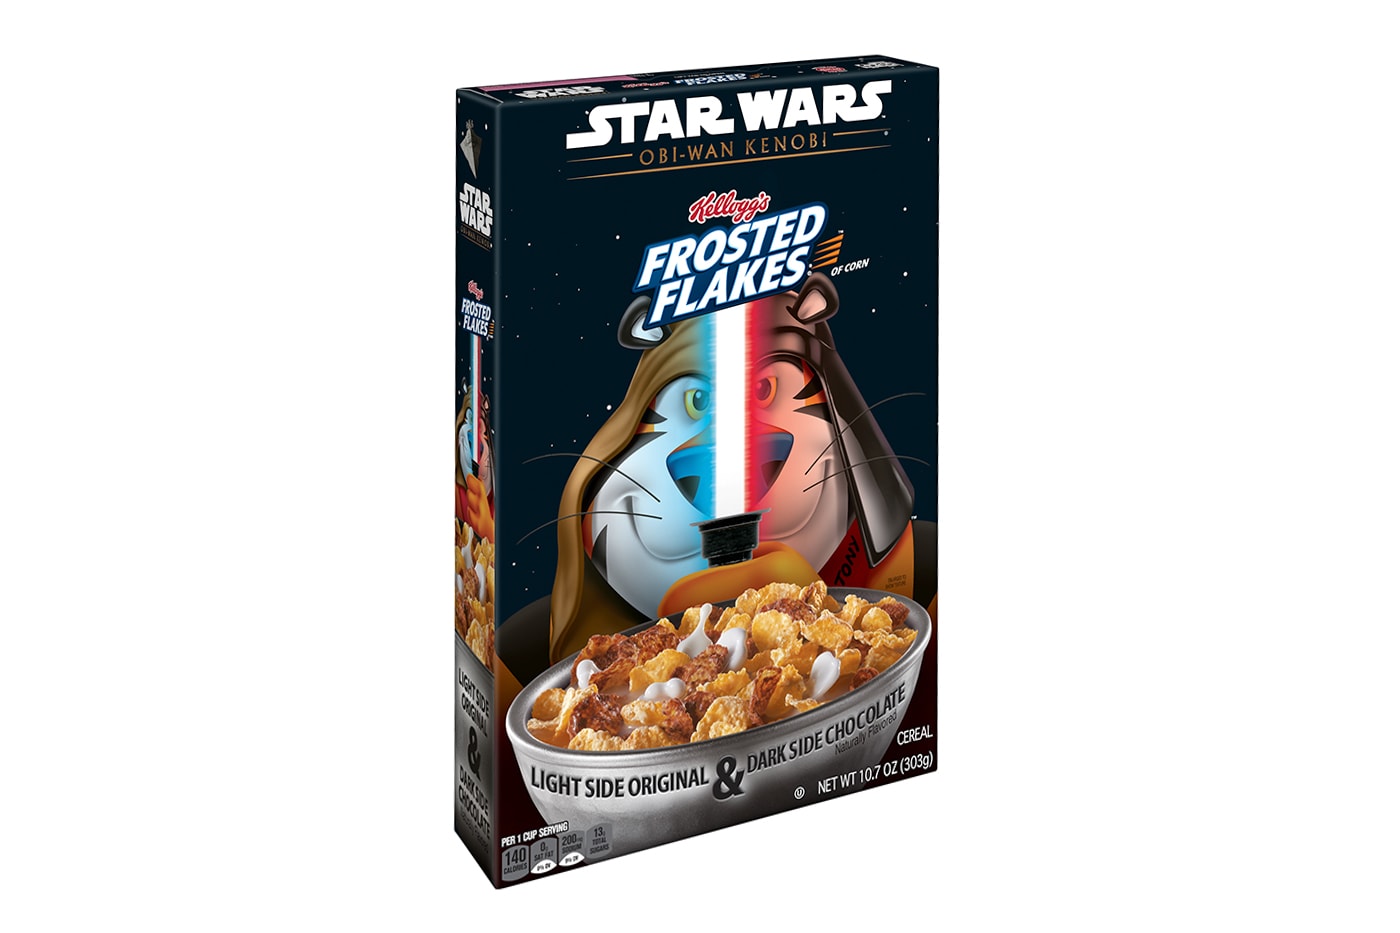  Kellogg’s Frosted Flakes Obi-Wan Kenobi Cereal Release Info Taste Review Lucasfilm Ltd.